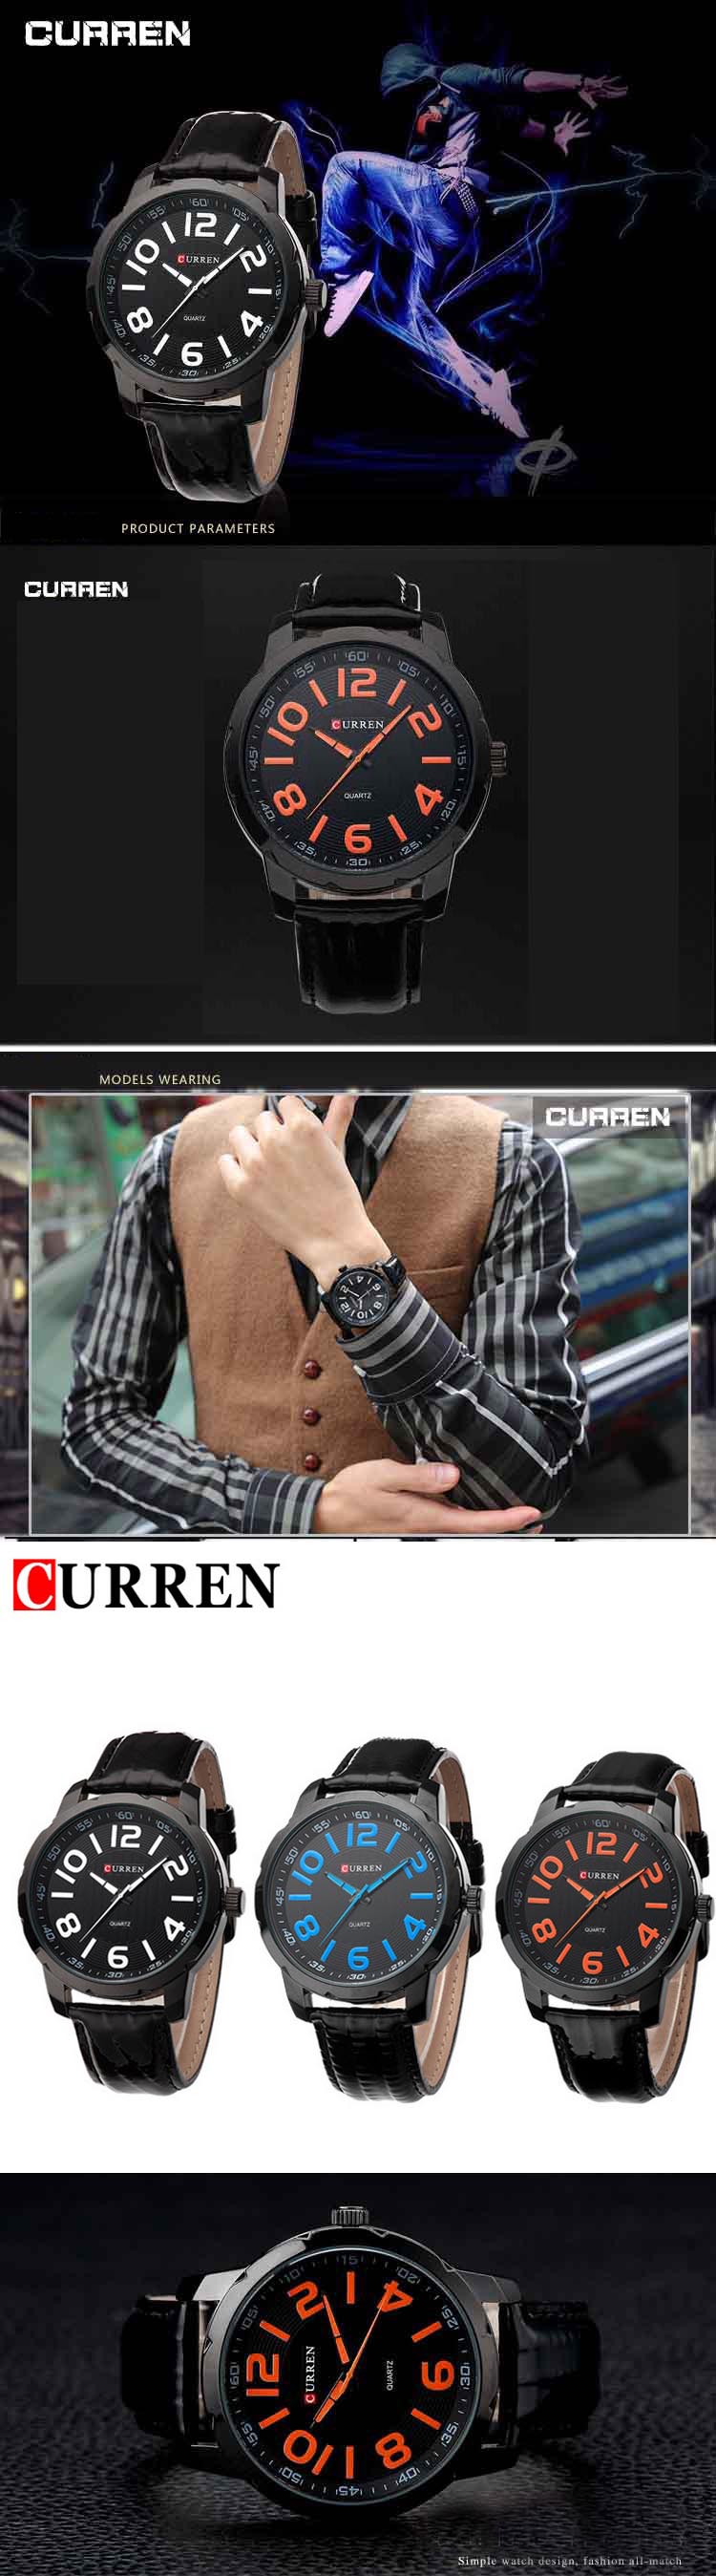 jual jam tangan pria branded merk curren dengan bahan tali kulit dan stainless jam tangan ini sangat cocok untuk pria modern